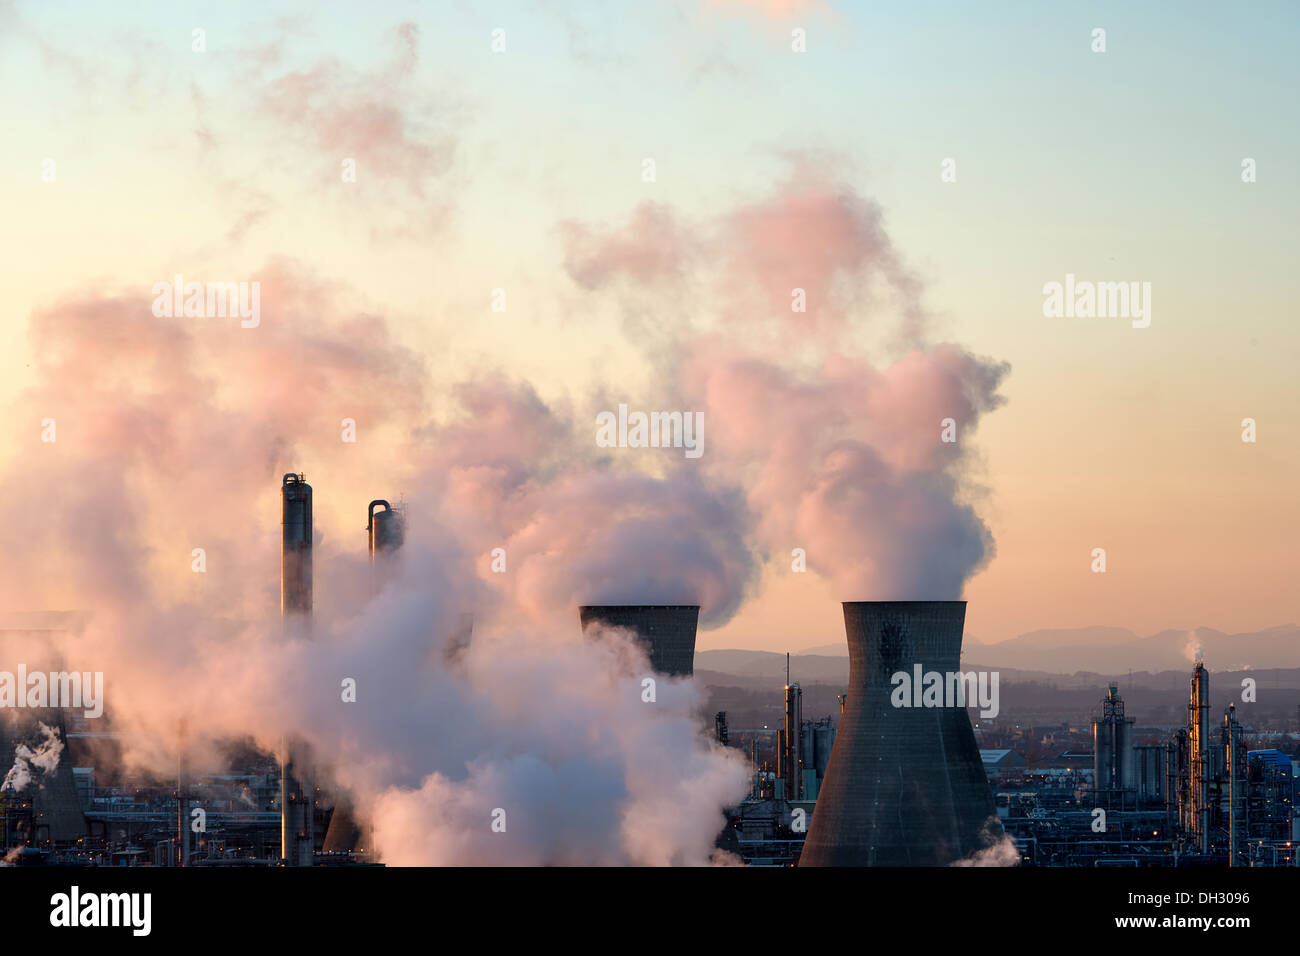 Les cheminées de la raffinerie de pétrole de Grangemouth crachant de la fumée dans l'atmosphère, la coloration rose de vapeurs au coucher du soleil Banque D'Images